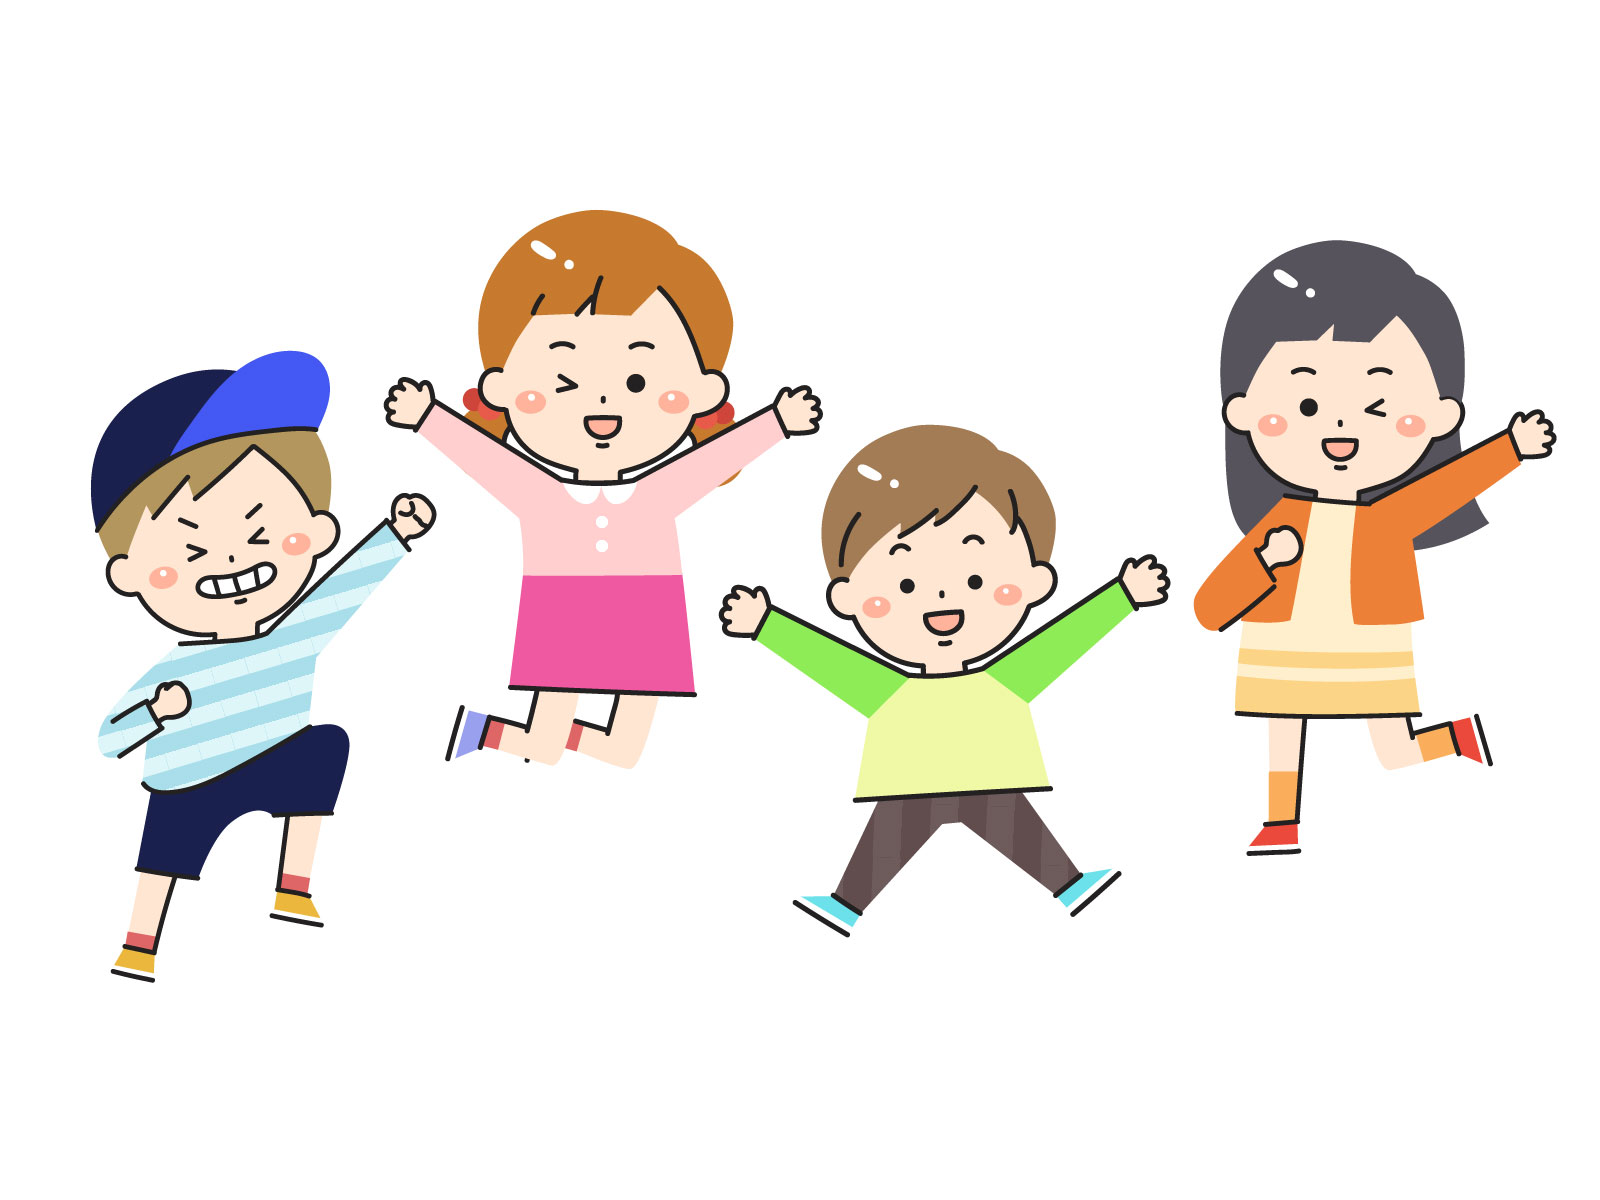 2021年度開催日程☆子どもたちの遊び場「プレイパーク」大津市内の公園でのびのび自由に☆参加費無料